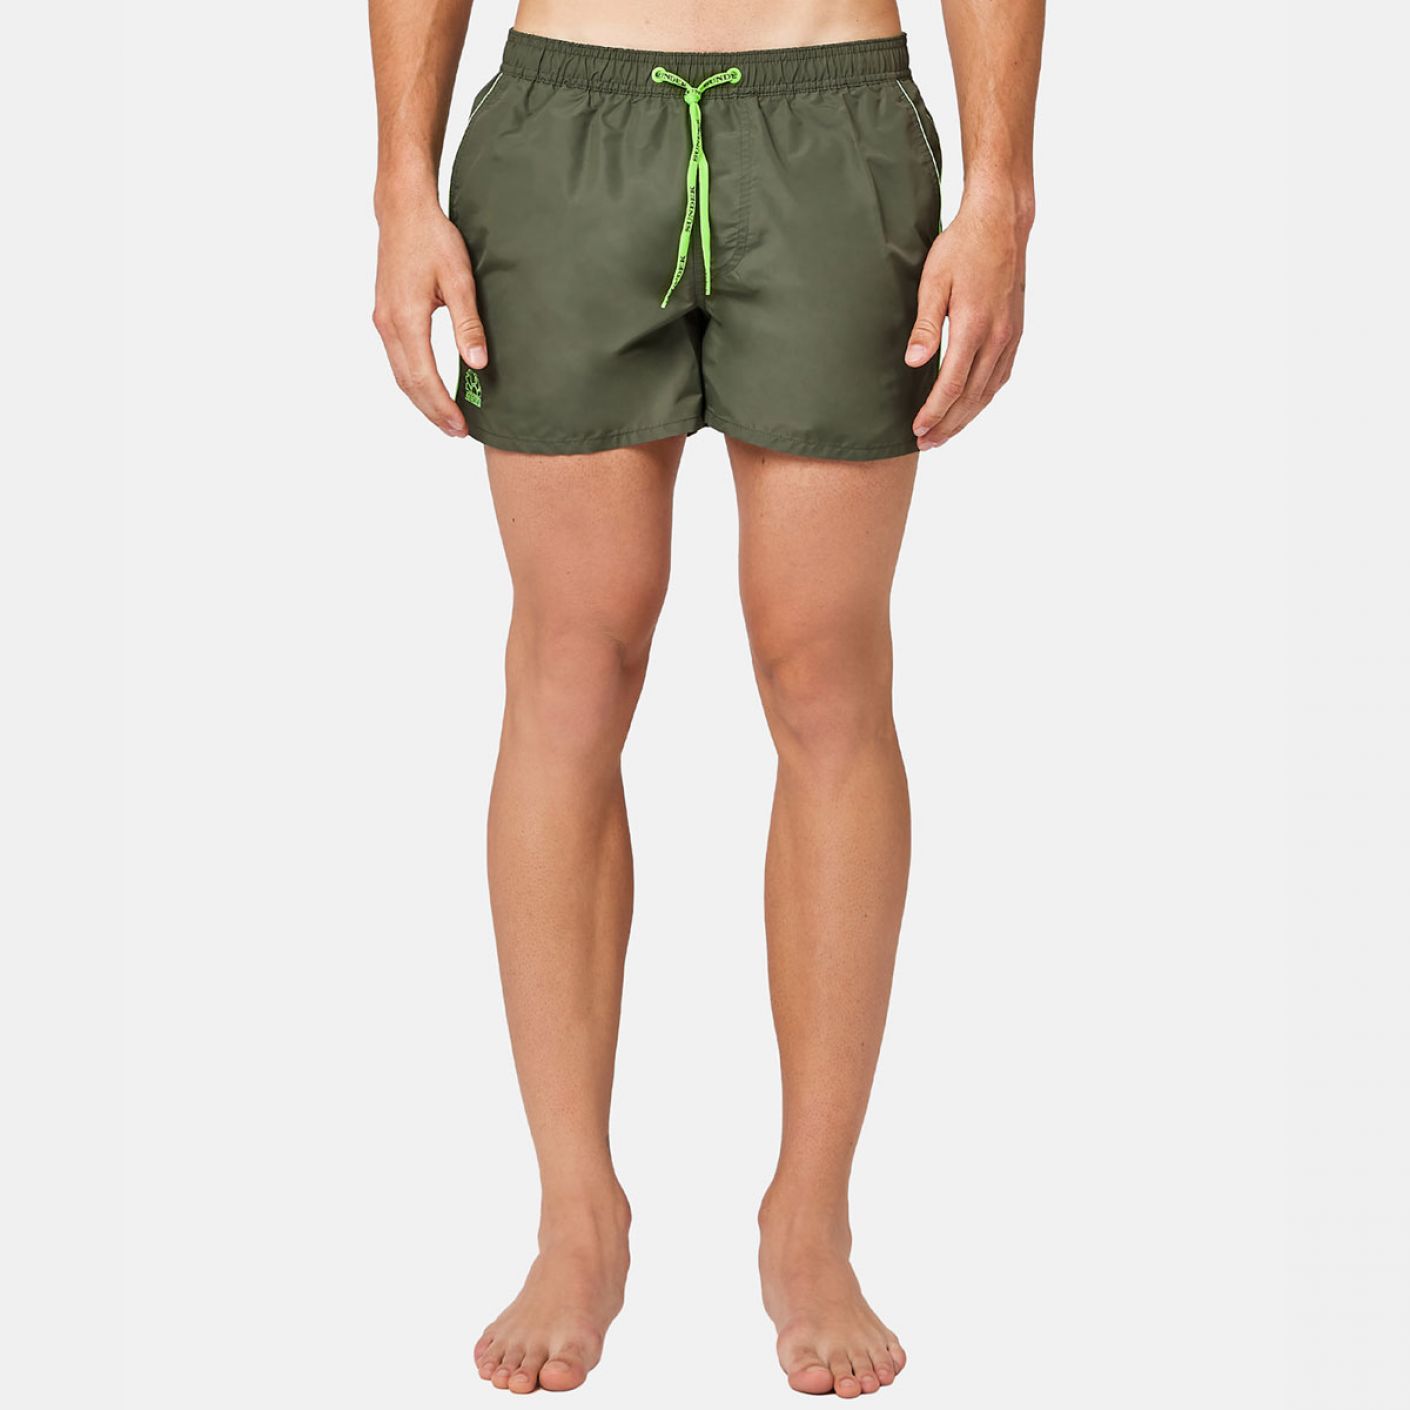 Sundek Men's Green Short Elastic Waist Swimsuit